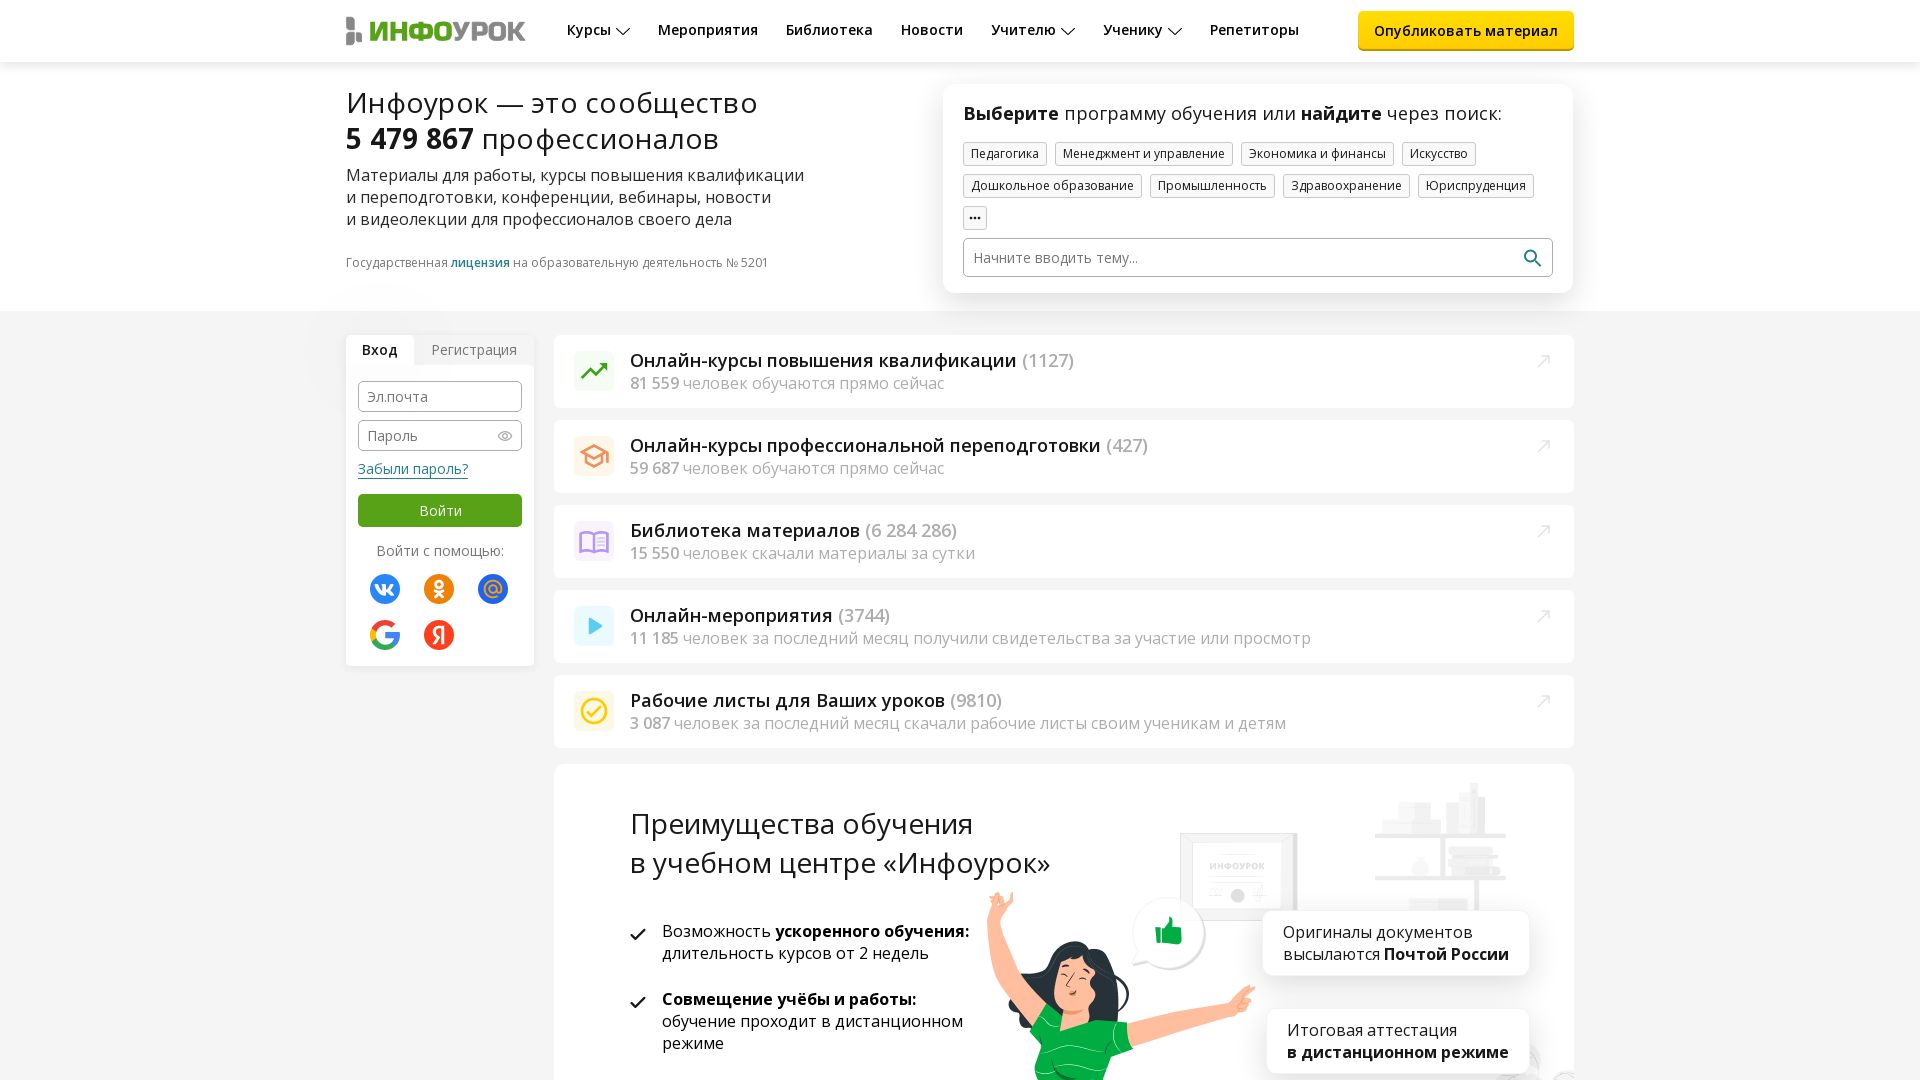 Webseitenstatus infourok.ru ist   ONLINE